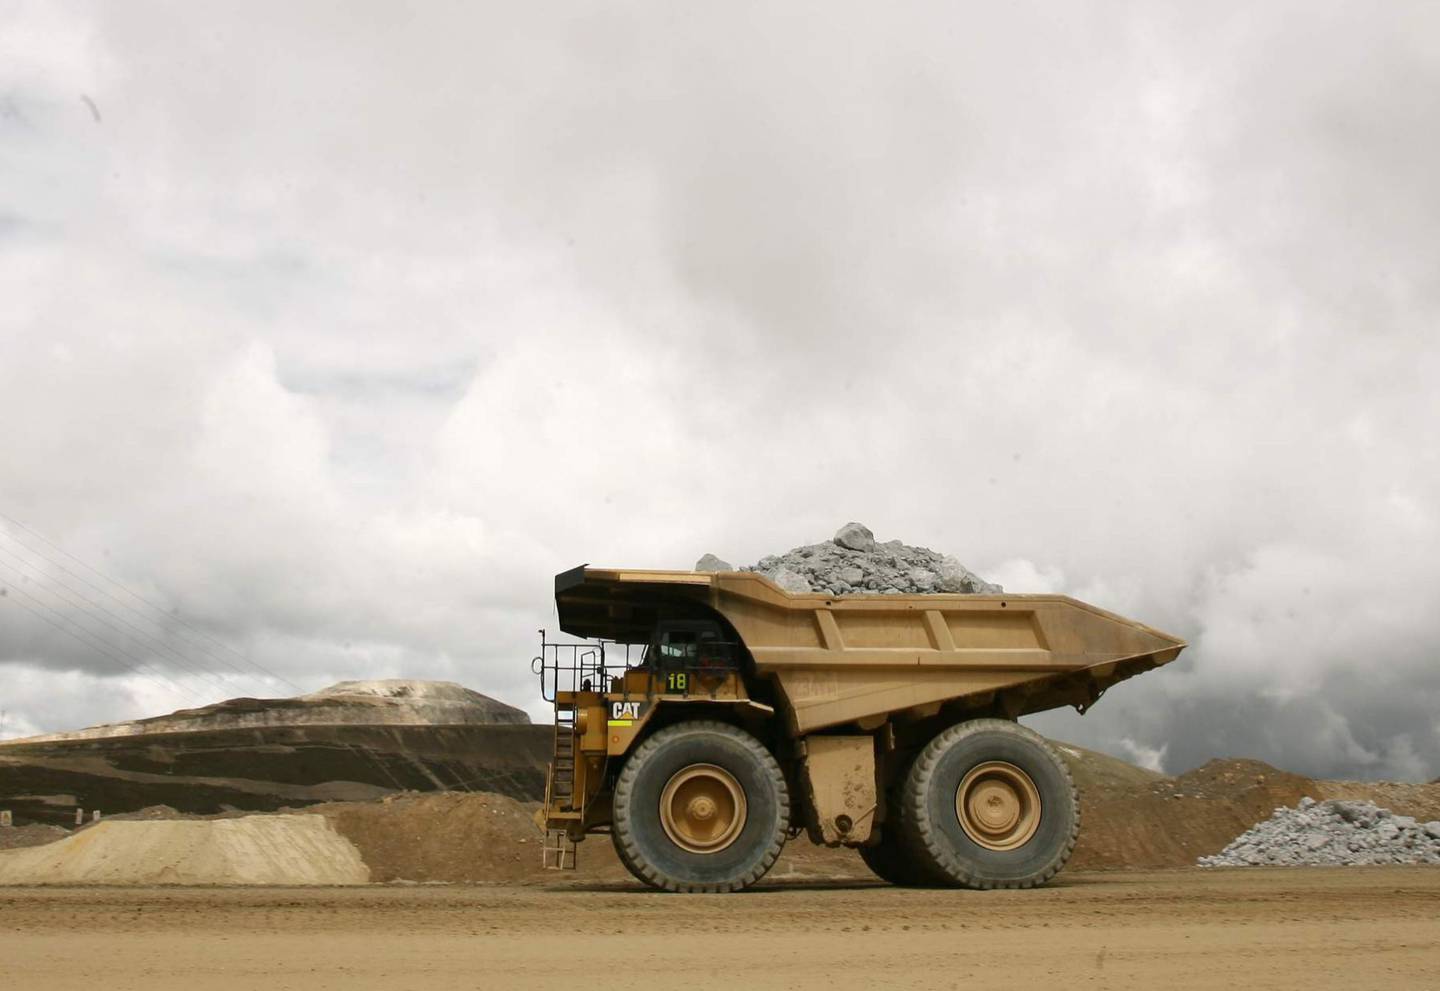 La inversión en exploración minera migra a países con mayor seguridad jurídica que la que se percibe en Perú, según la encuesta.dfd